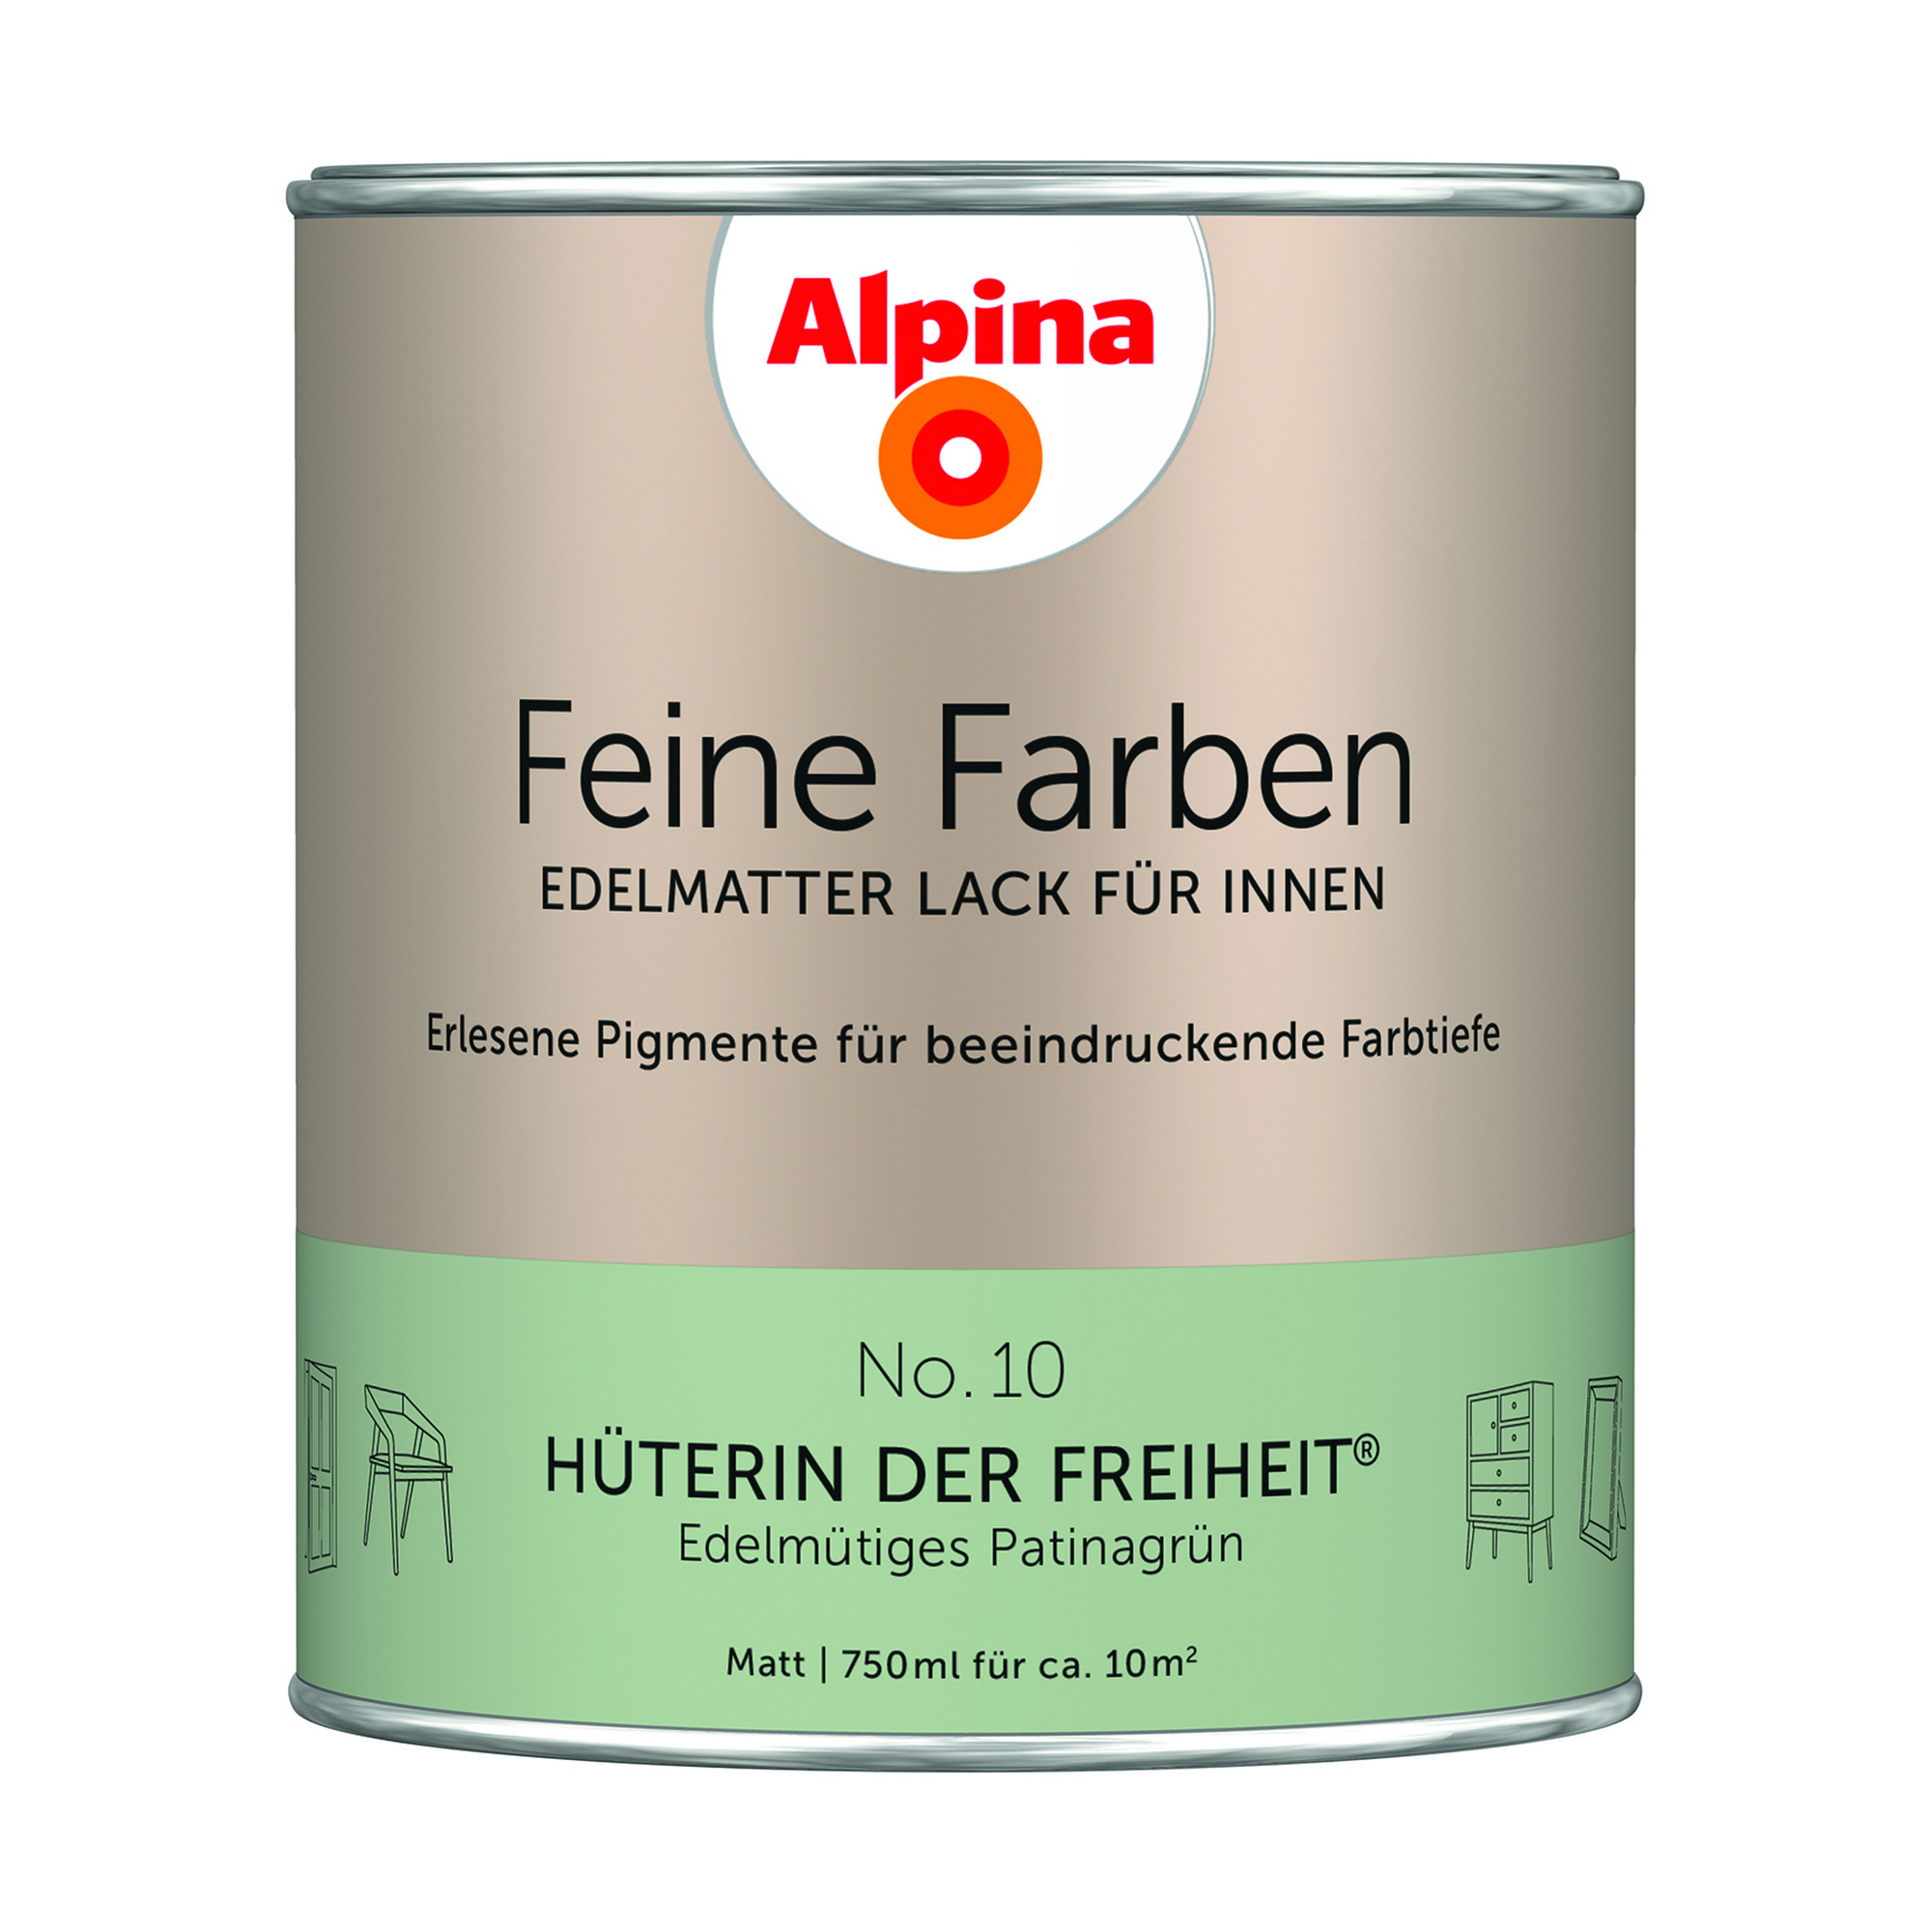 Feine Farben 'Hüterin der Freiheit' patinagrün matt 750 ml + product picture